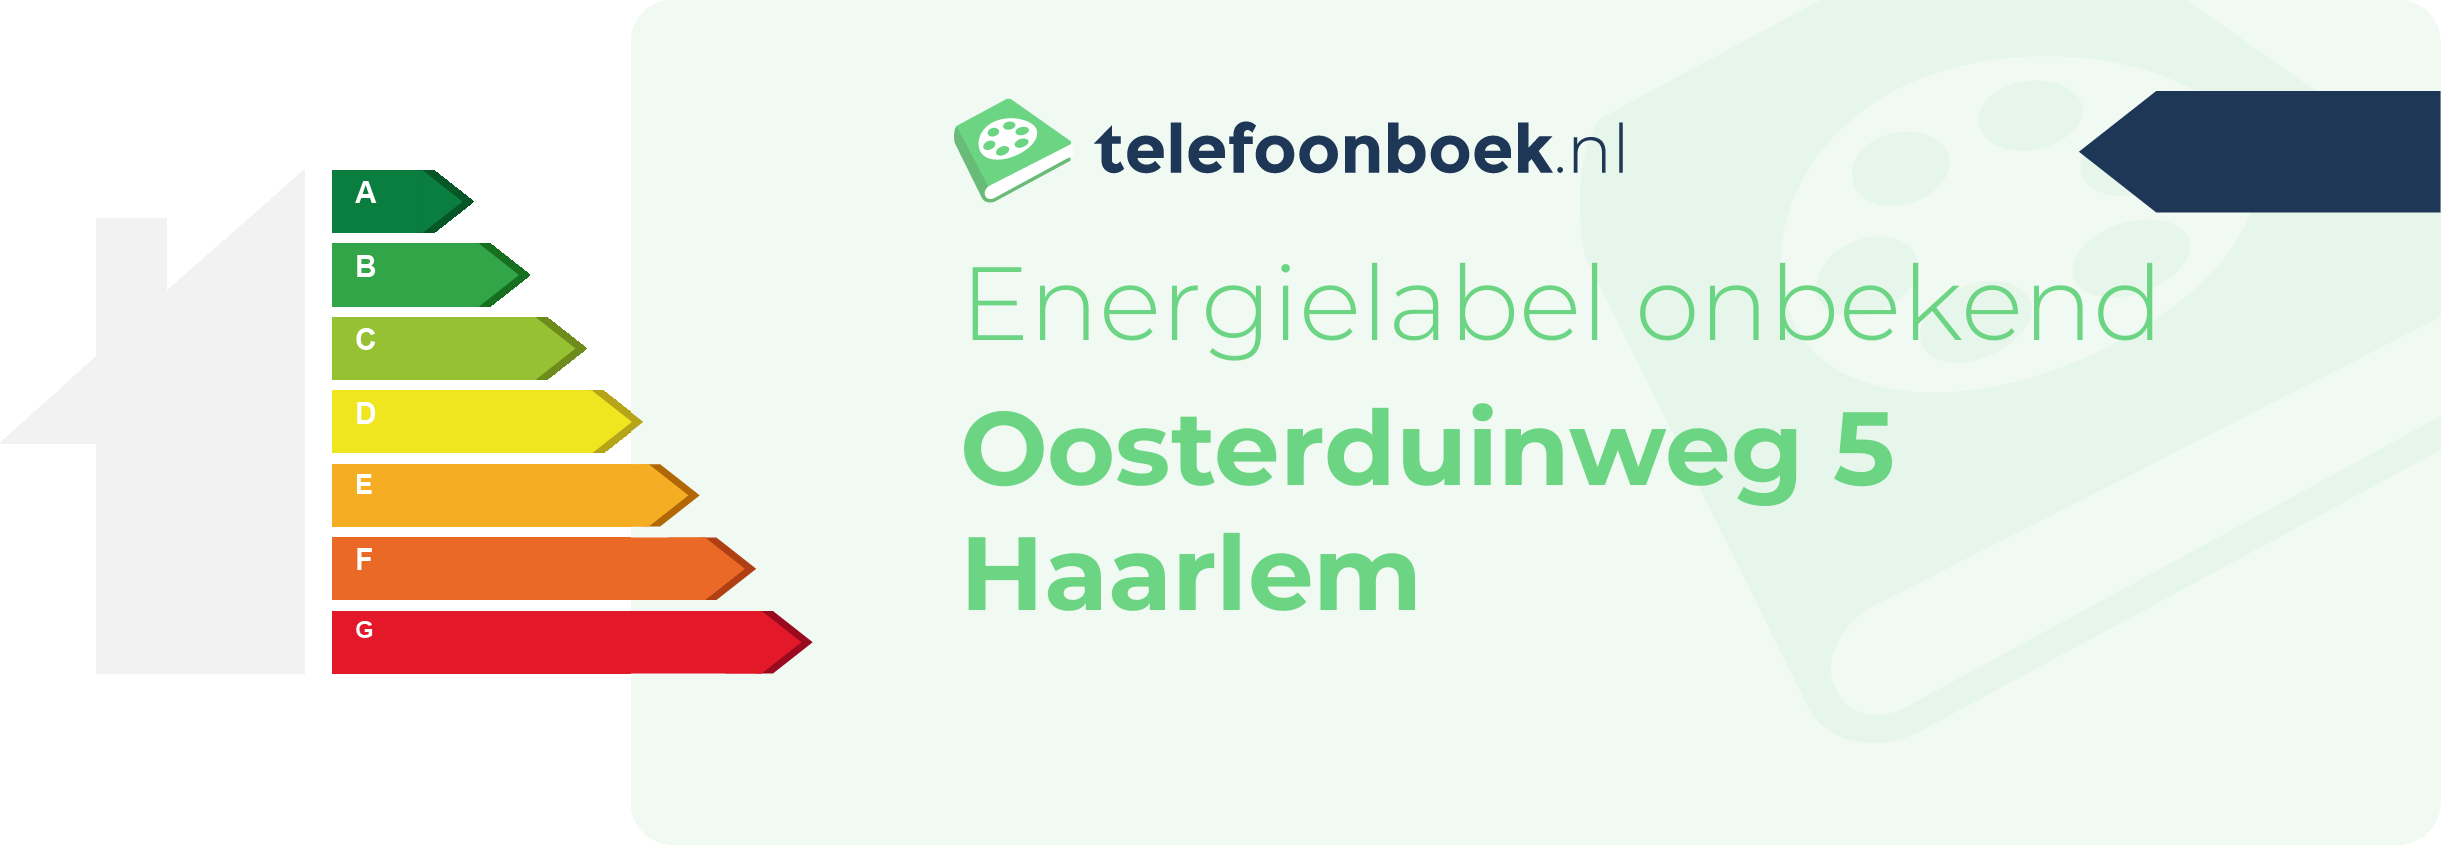 Energielabel Oosterduinweg 5 Haarlem